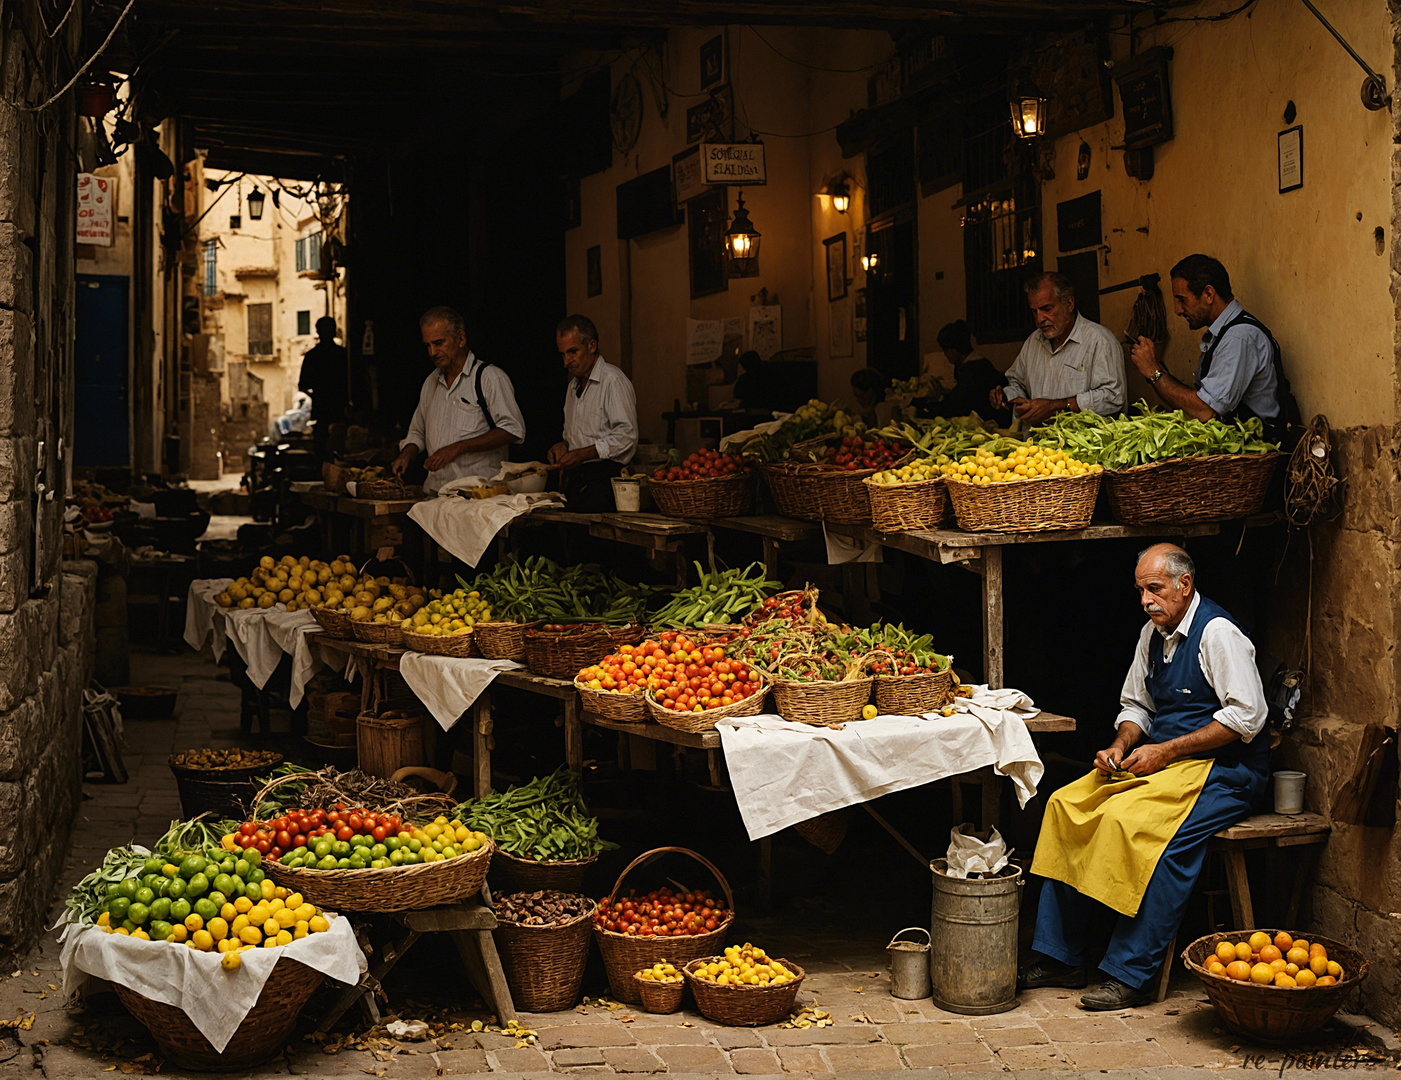 Marché de fruits et légumes - Espagne  - Gemüse und Obstmarkt - Spanien